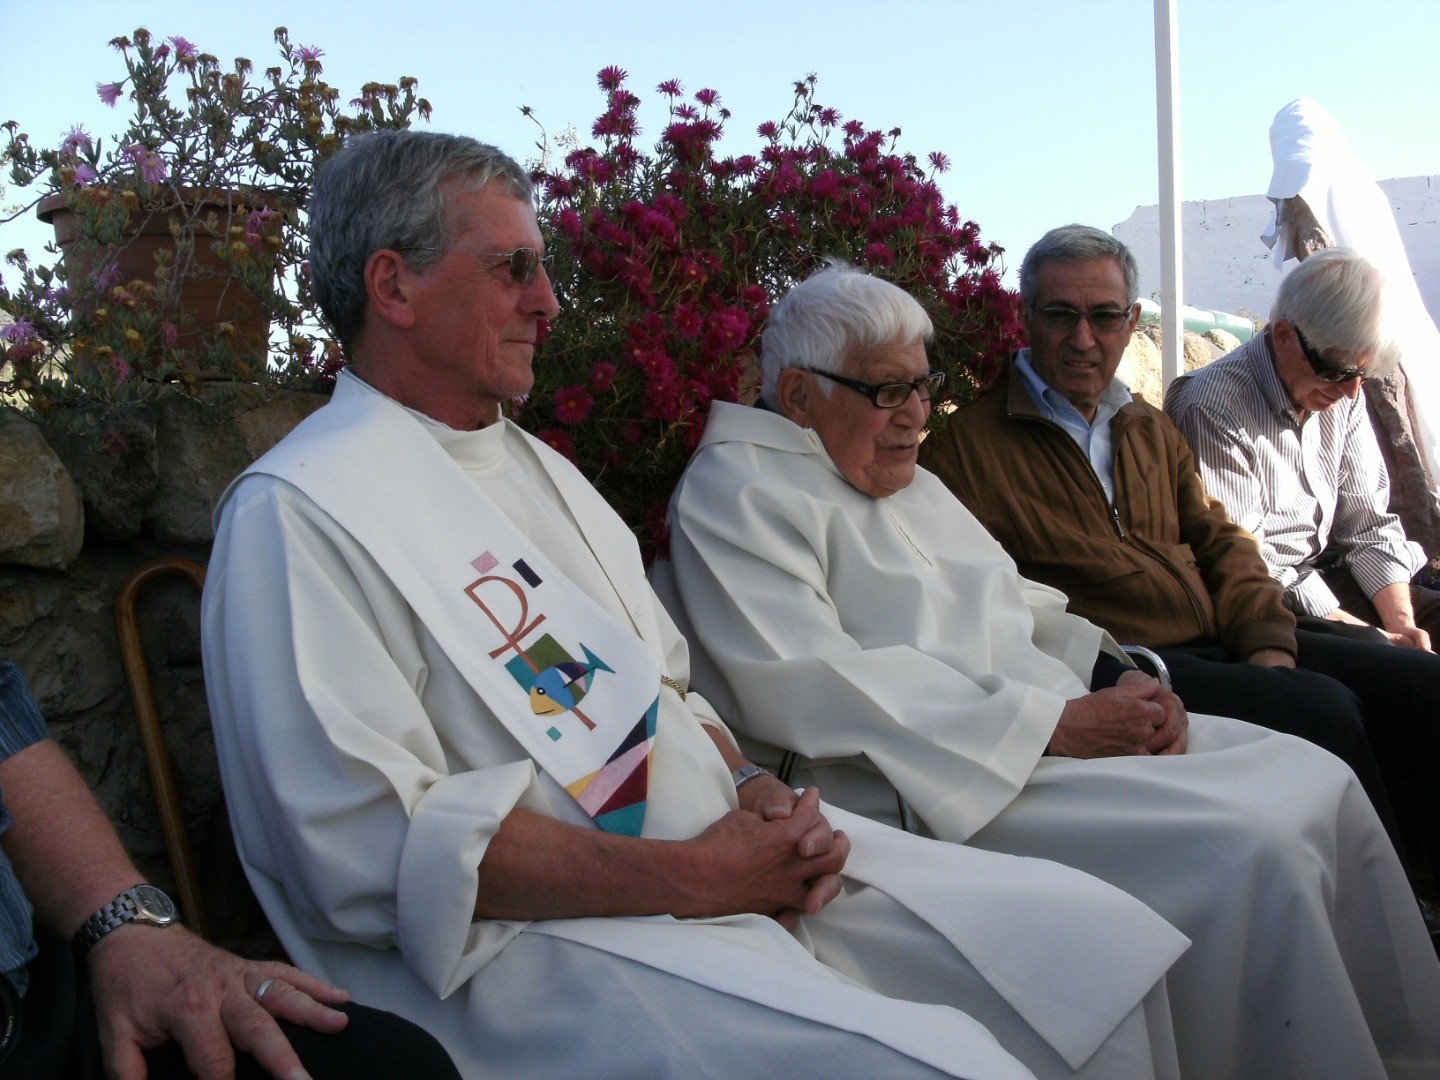 2009 - Carbonia, Sardegna - Commemorazione per i 30 anni di fratel Gérard Fabert nell'isola - Fratel Yves Amiotte, Arturo Paoli, don Ettore Cannavera e Mario Porcu